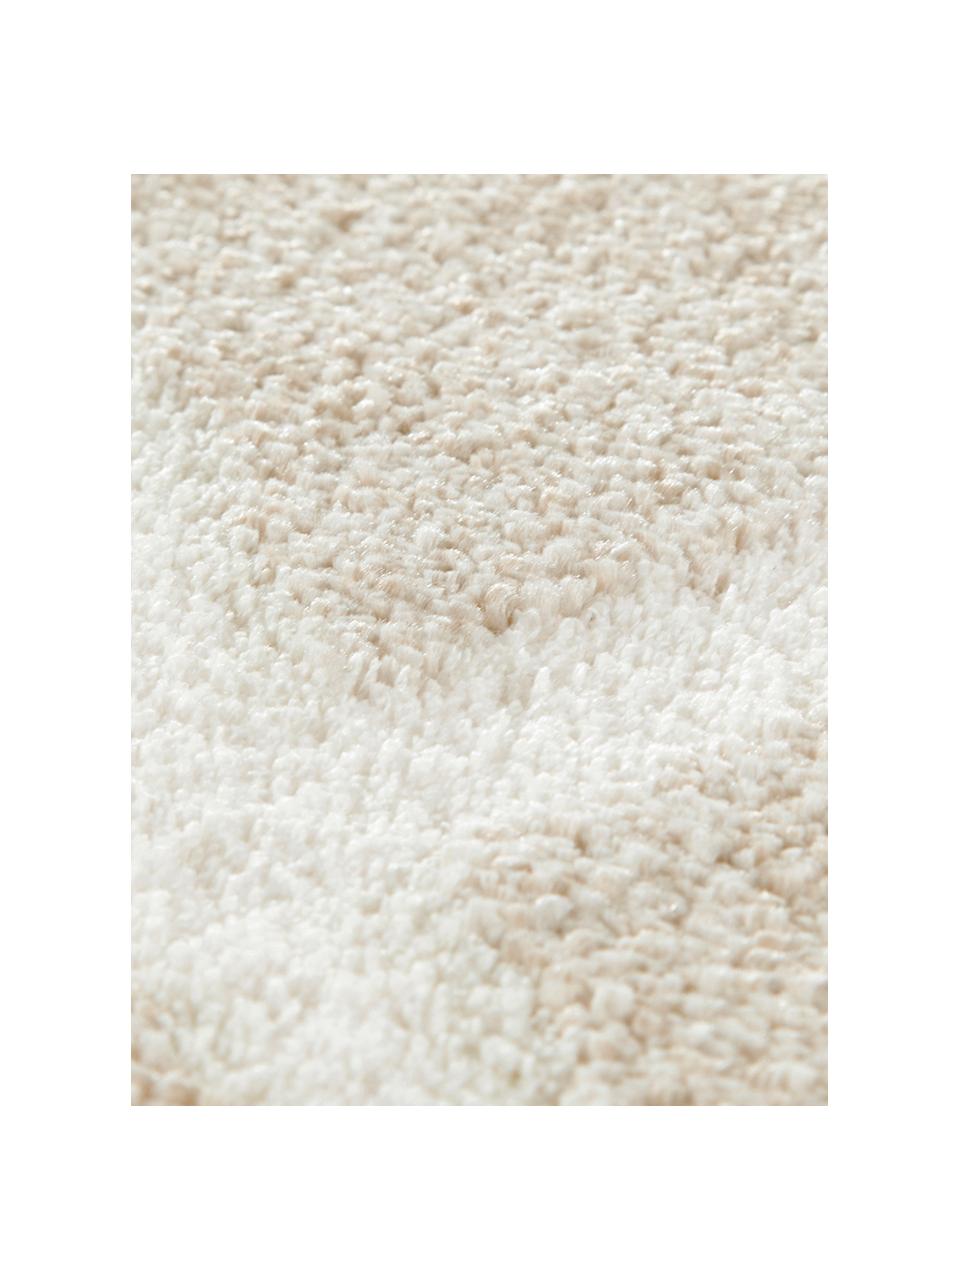 Teppich Lunel mit Rautenmuster, Flor: 85% Polypropylen, 15% Pol, Beige, Cremefarben, B 200 x L 290 cm (Grösse L)